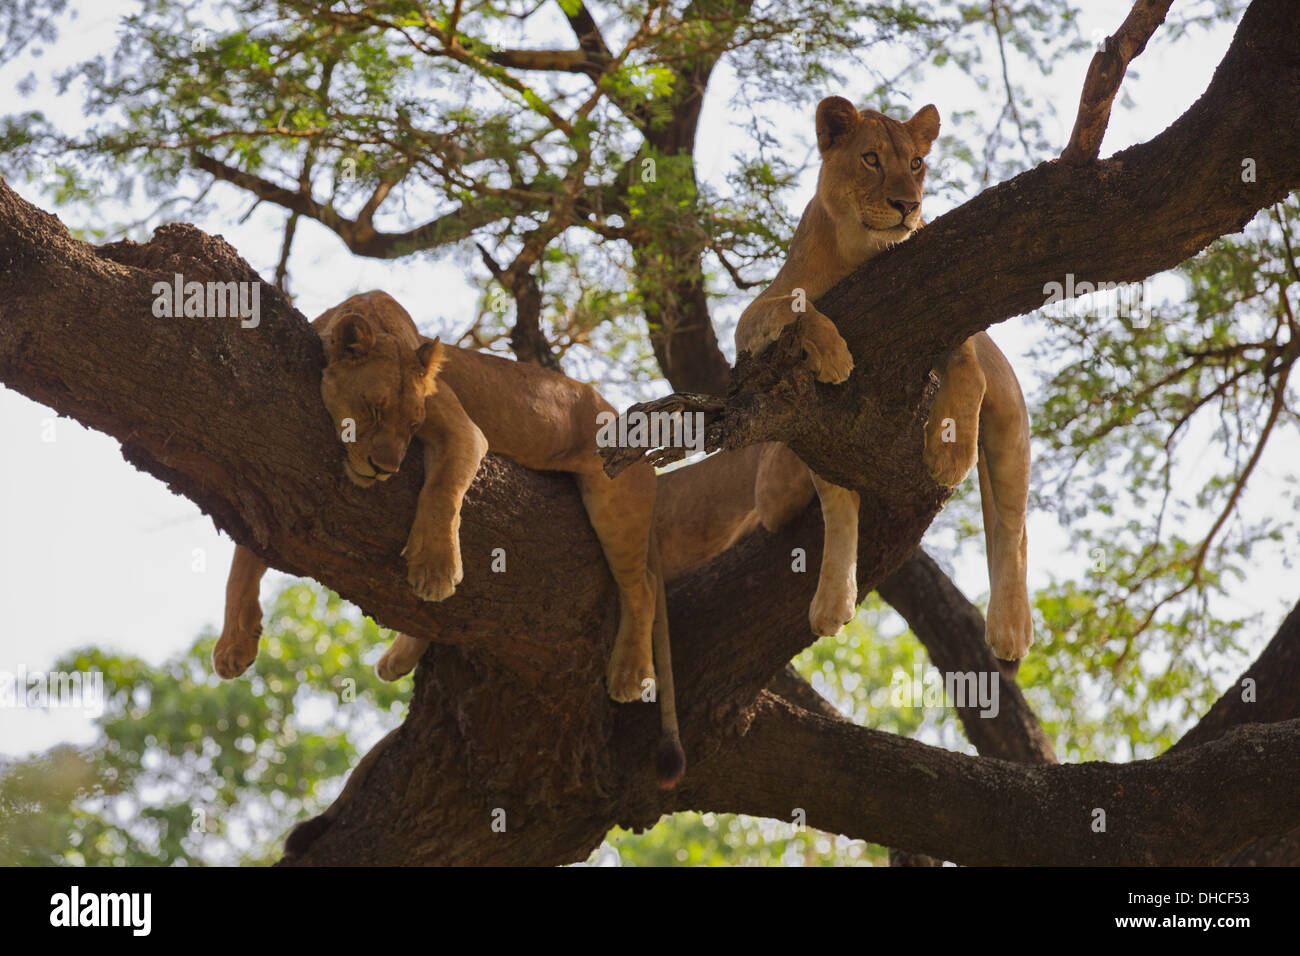 Leone africano in appoggio nella struttura ad albero. Lake Manyara National Park. Panthera leo. Tanzania, Africa. Il re della giungla. La criniera. Orgoglio. Foto Stock